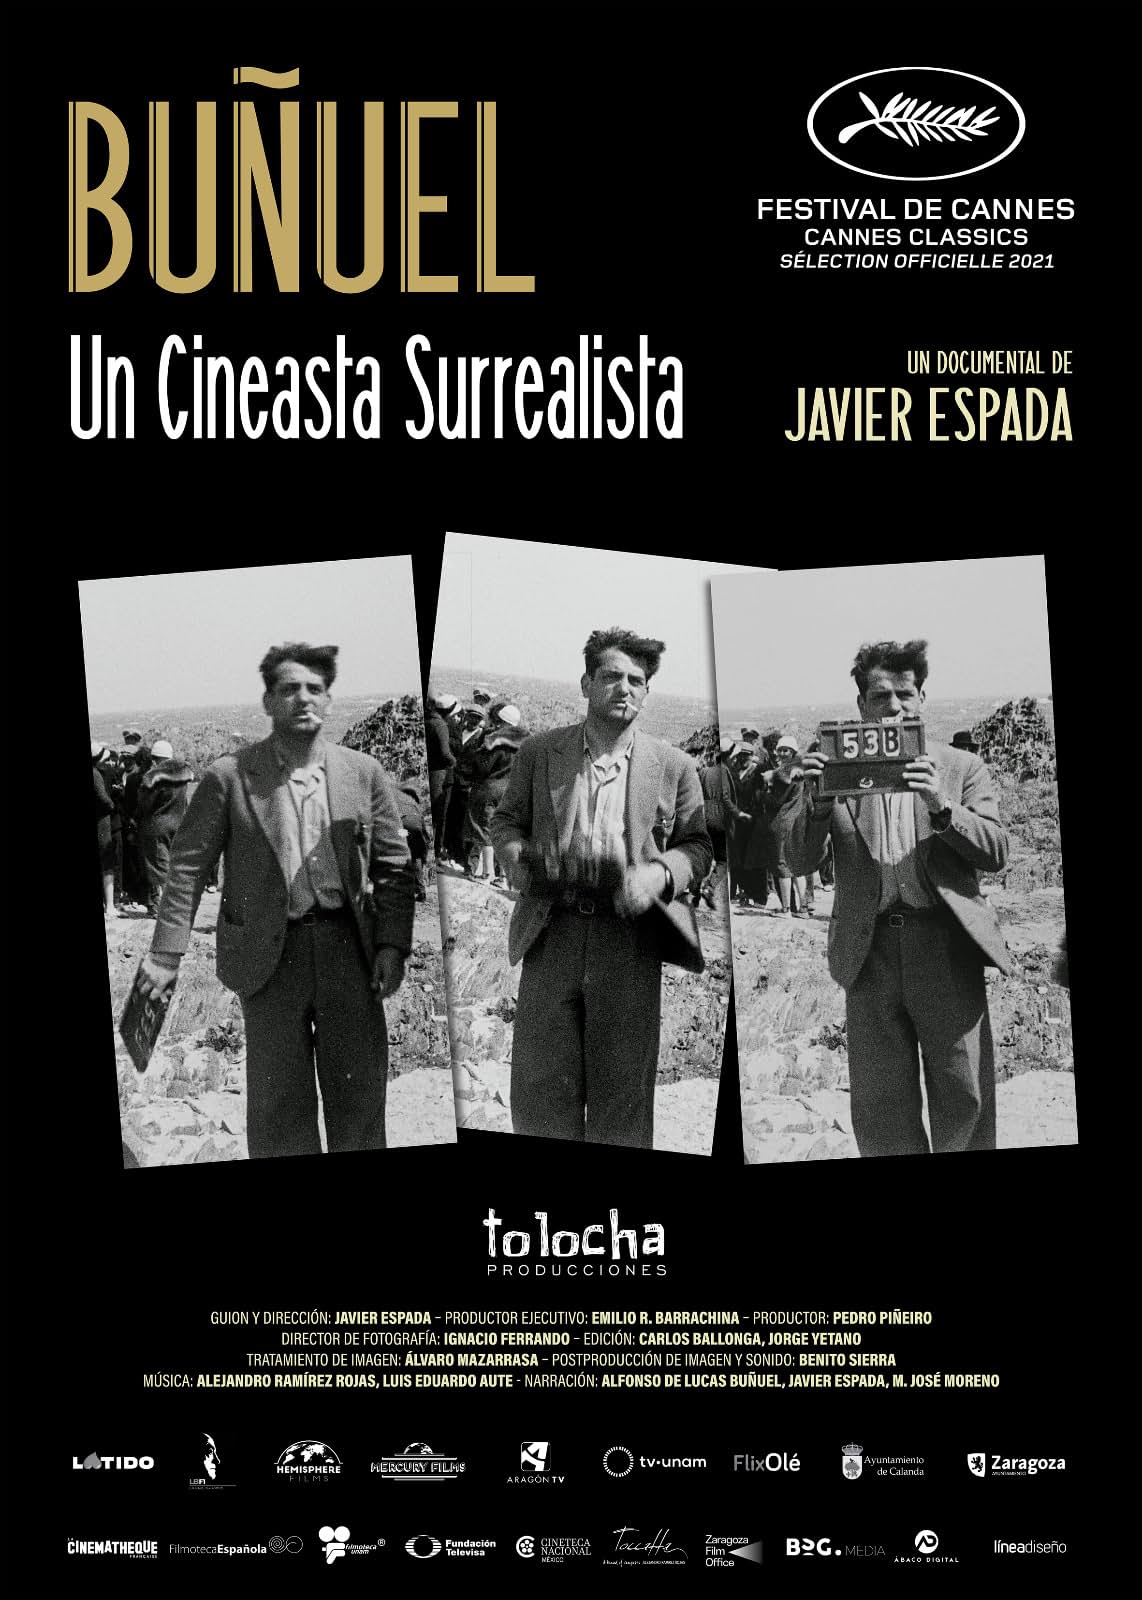     Buñuel: surrealista wśród reżyserów